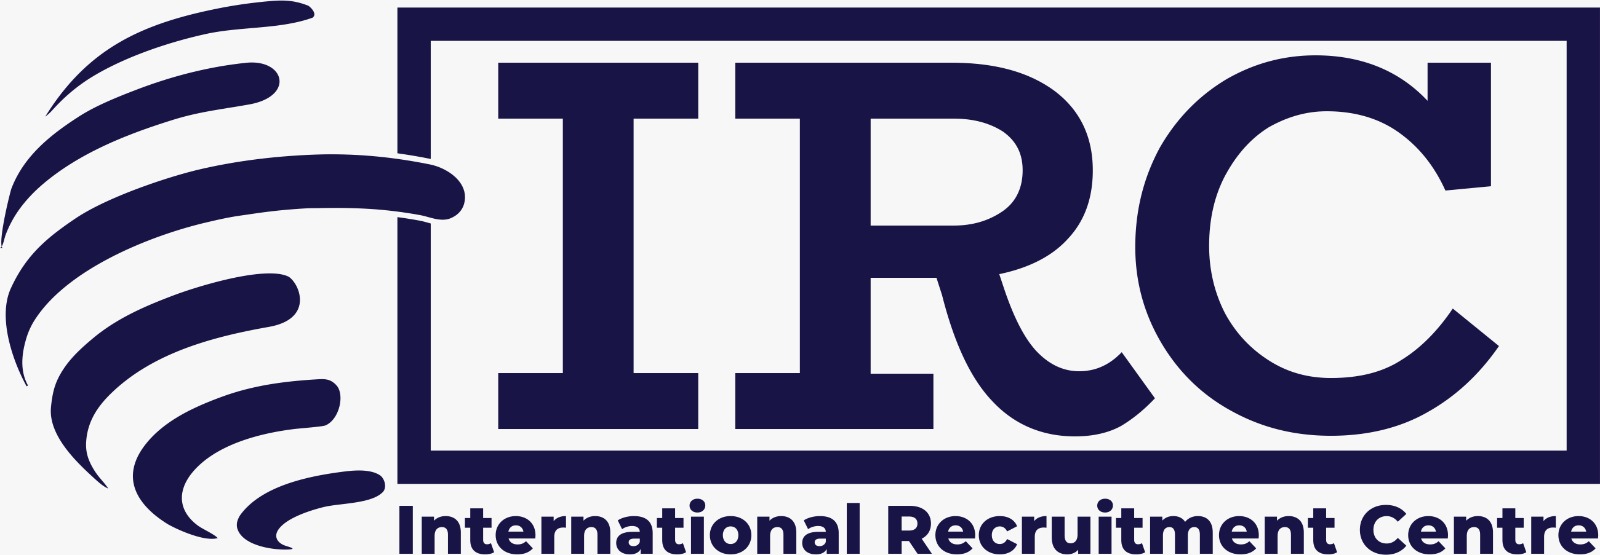 Company logo for International Recruitment Centre Pte. Ltd.